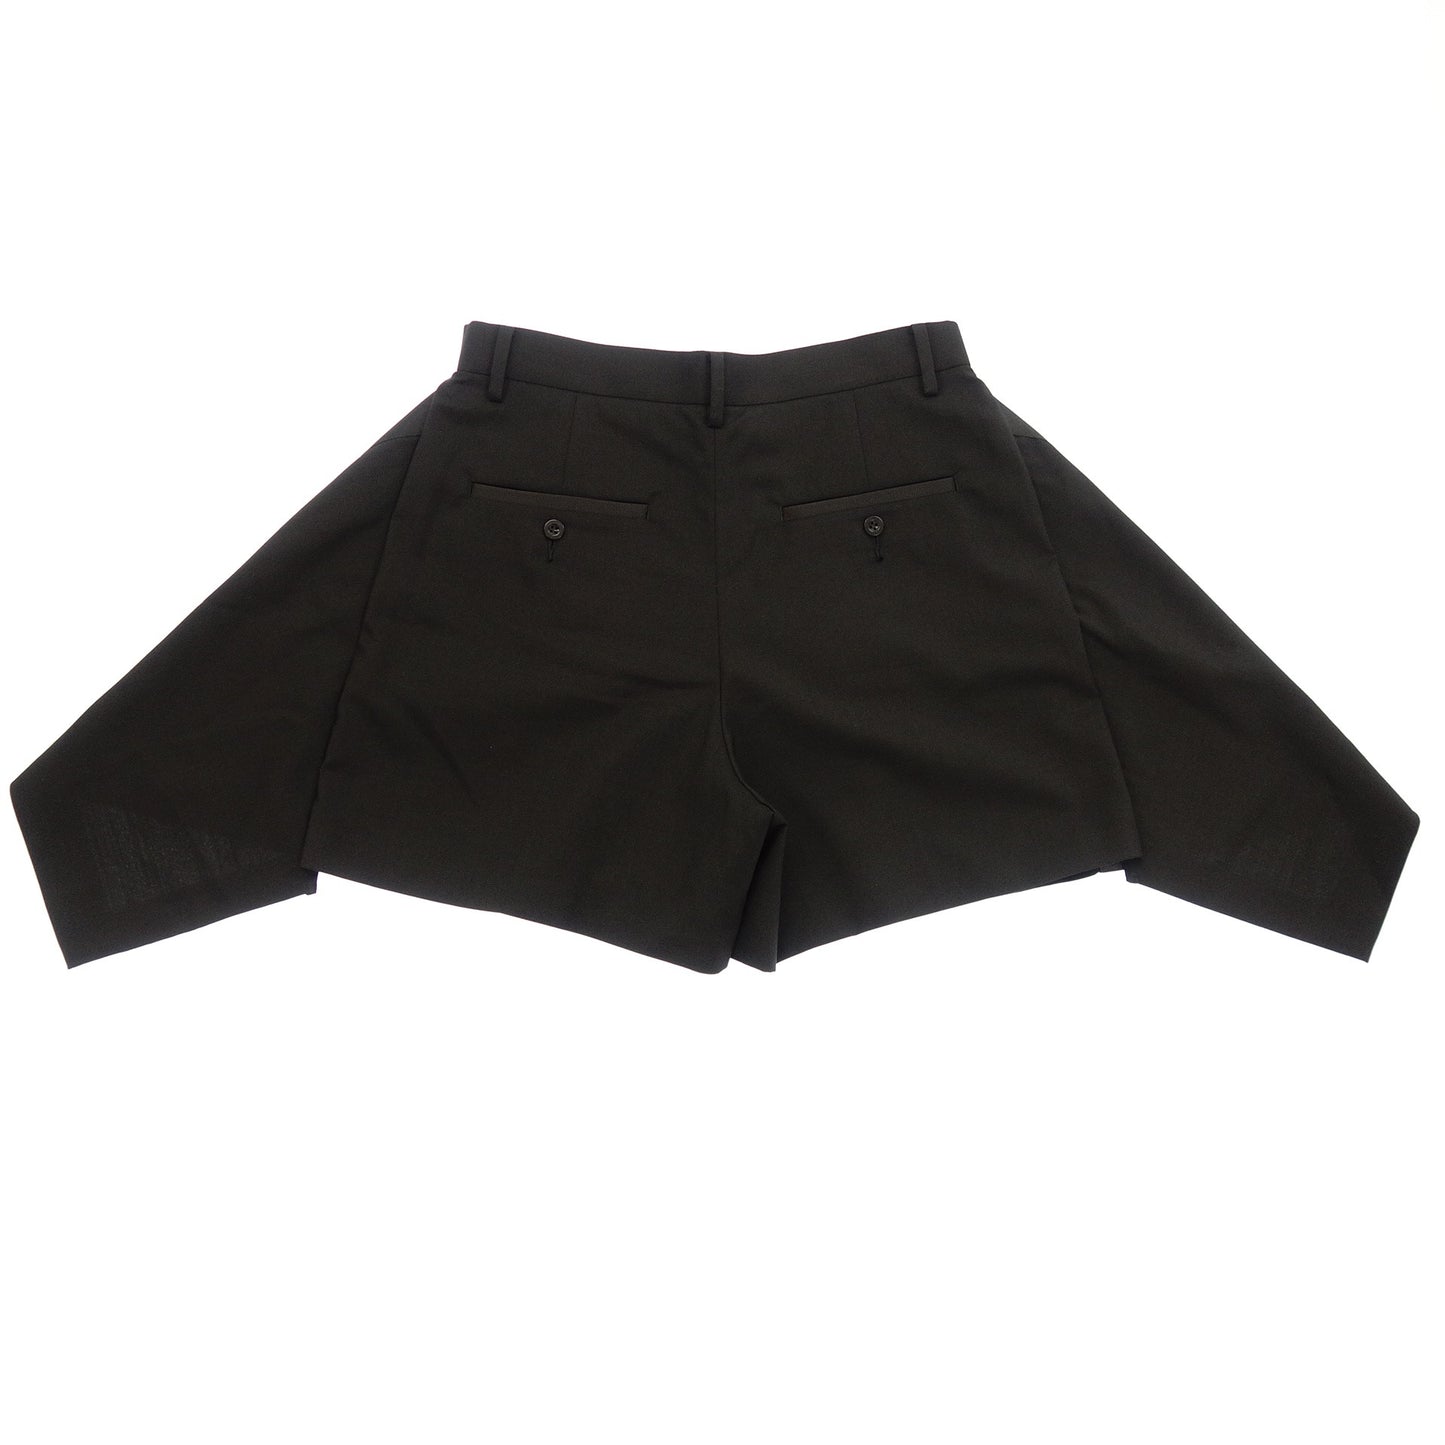 状况良好◆Sacai 短裤不对称短裤 21-05402 黑色尺寸 3 女士 sacai [AFB32] 